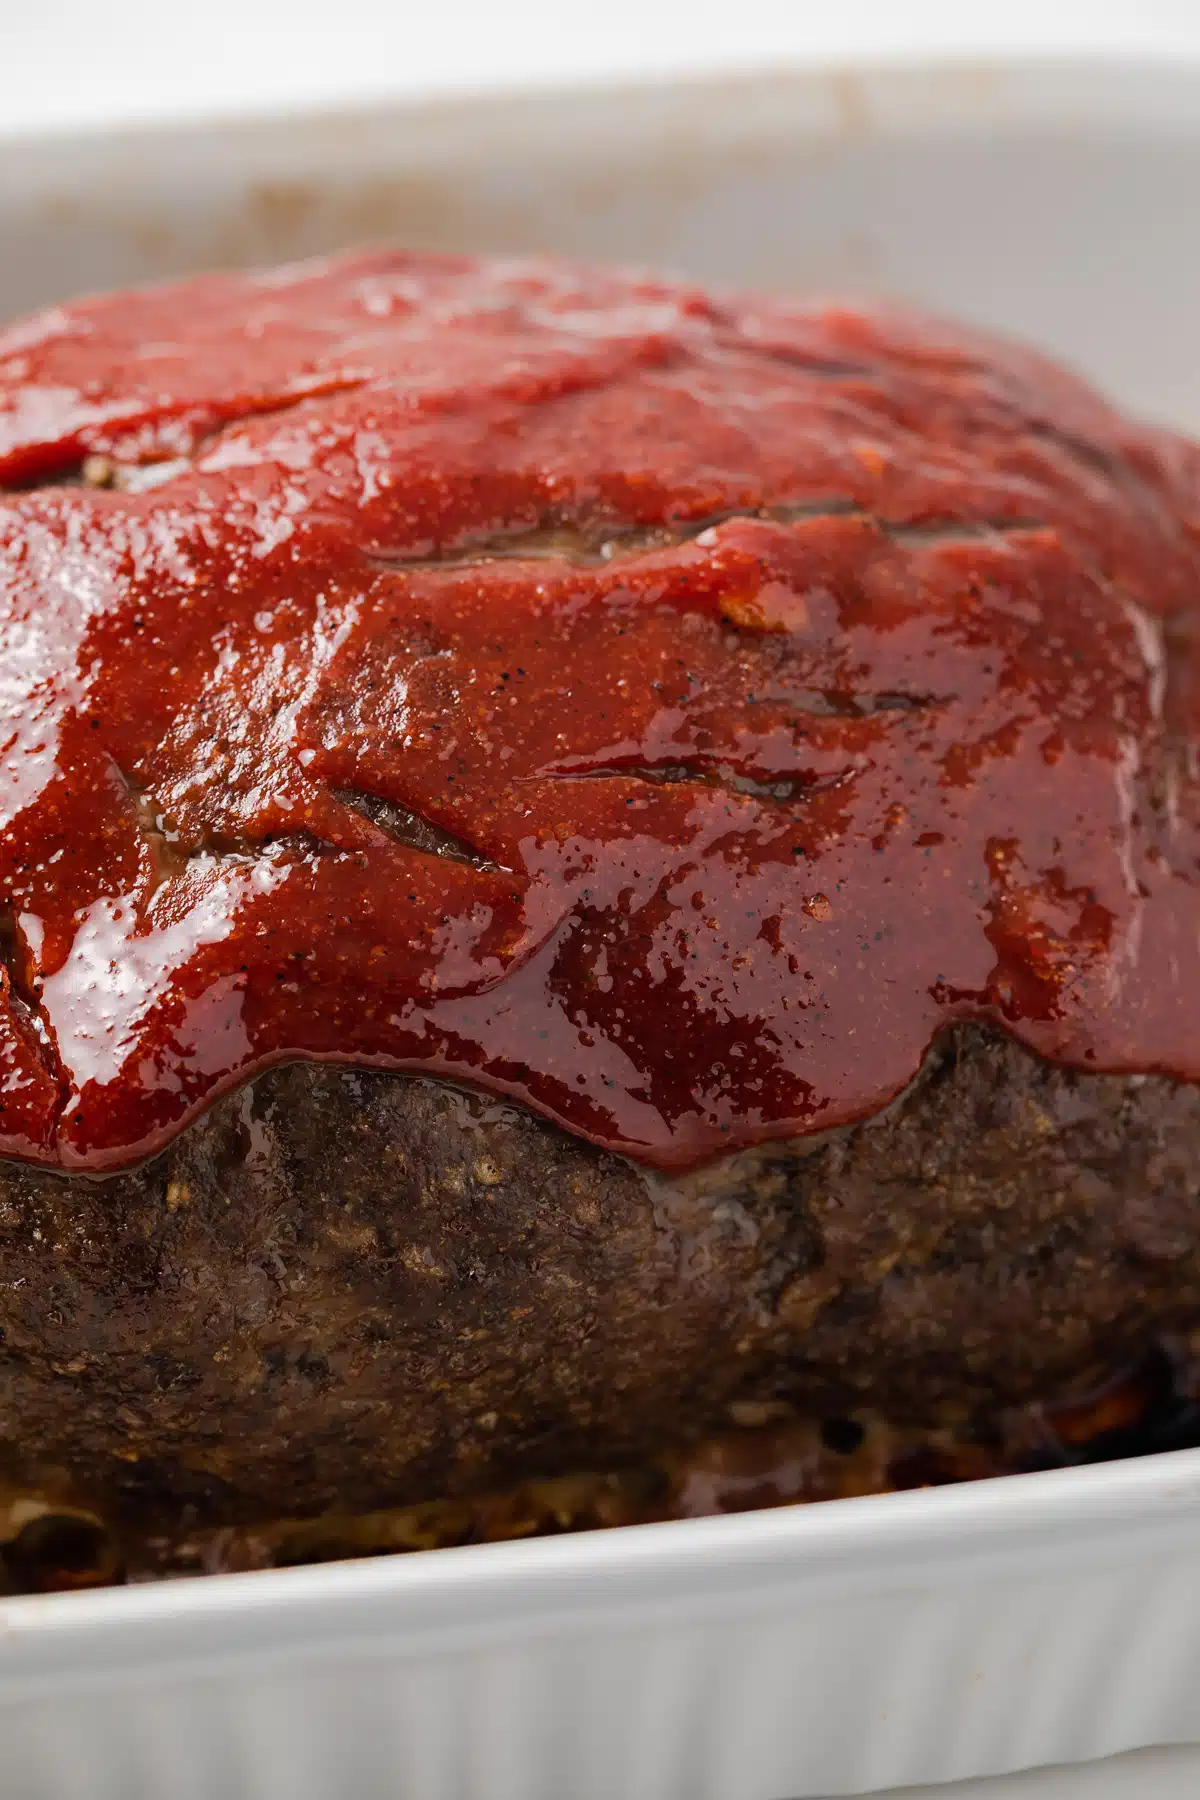 Meatloaf sauce on top of baked meatloaf.